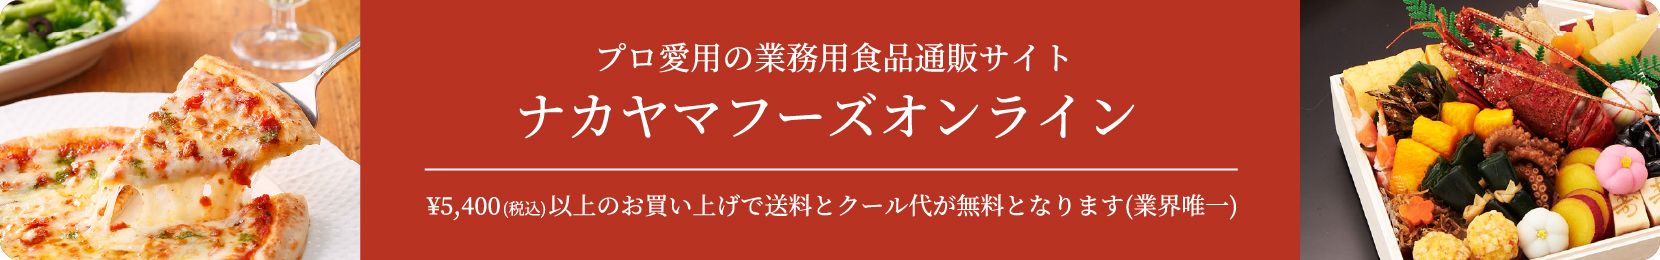 プロ愛用の業務用食品通販サイト ナカヤマフーズオンライン ¥5,400(税込)以上のお買い上げで送料とクール代が無料となります(業界唯一)